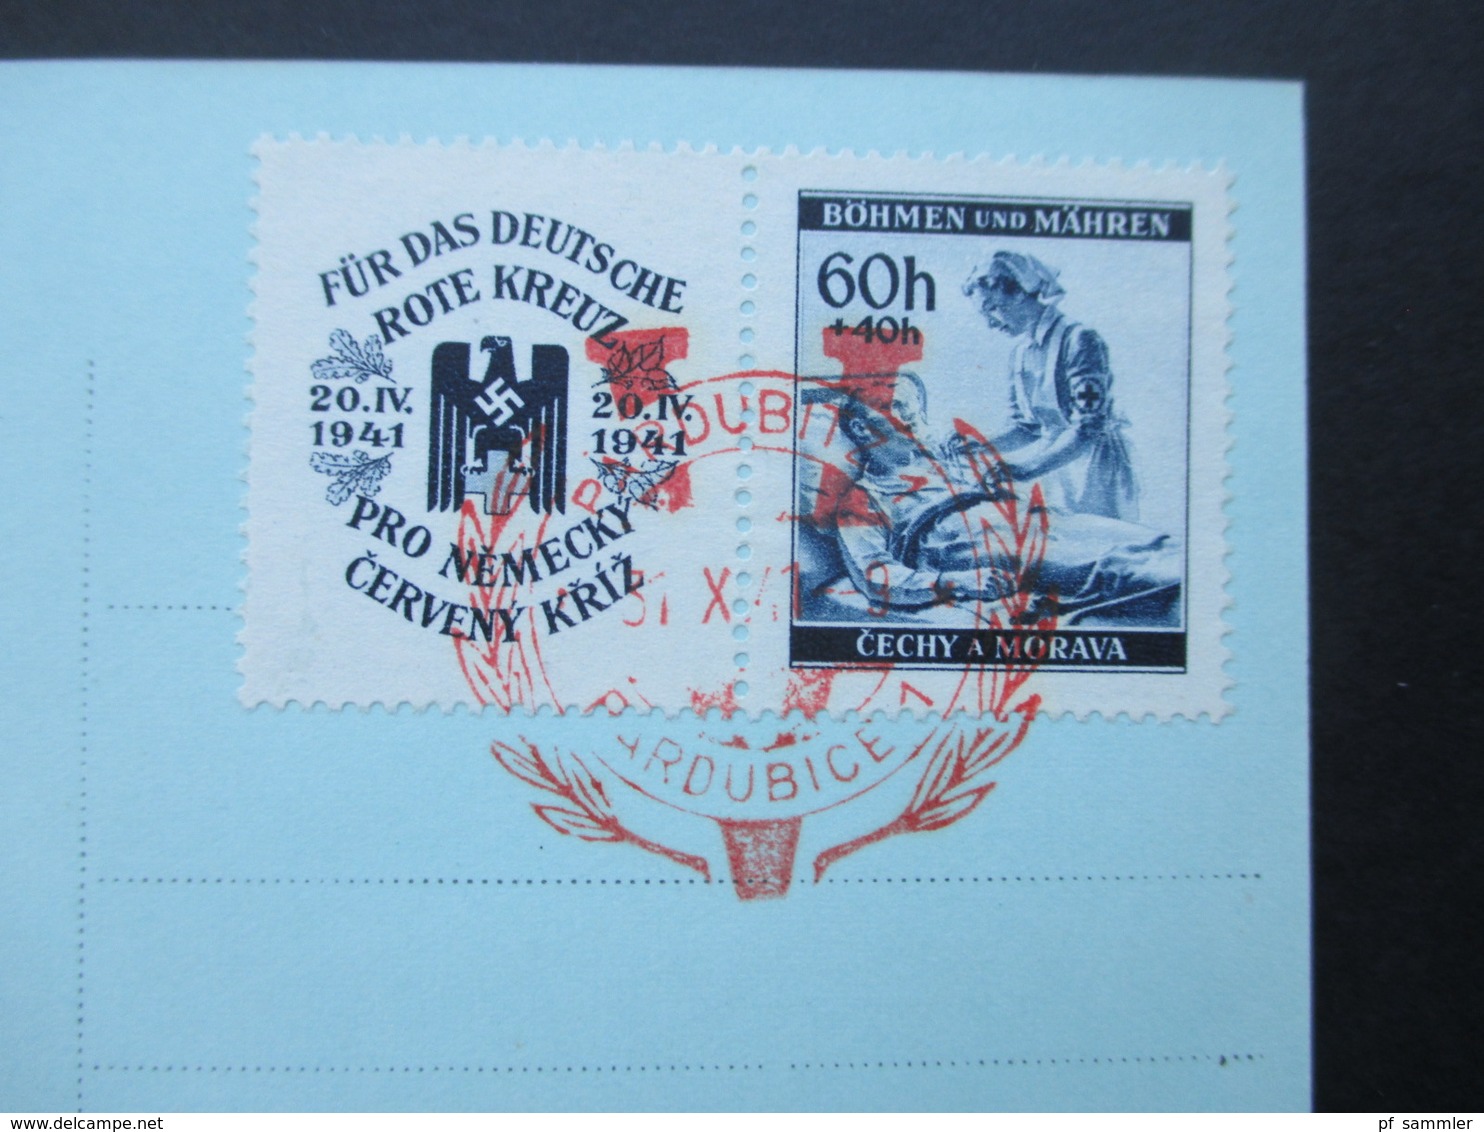 Böhmen Und Mähren 1941 Nr. 62 Zf Echtofoto Postkarte Pardubitz. Roter Sonderstempel 31.X..41 - Briefe U. Dokumente